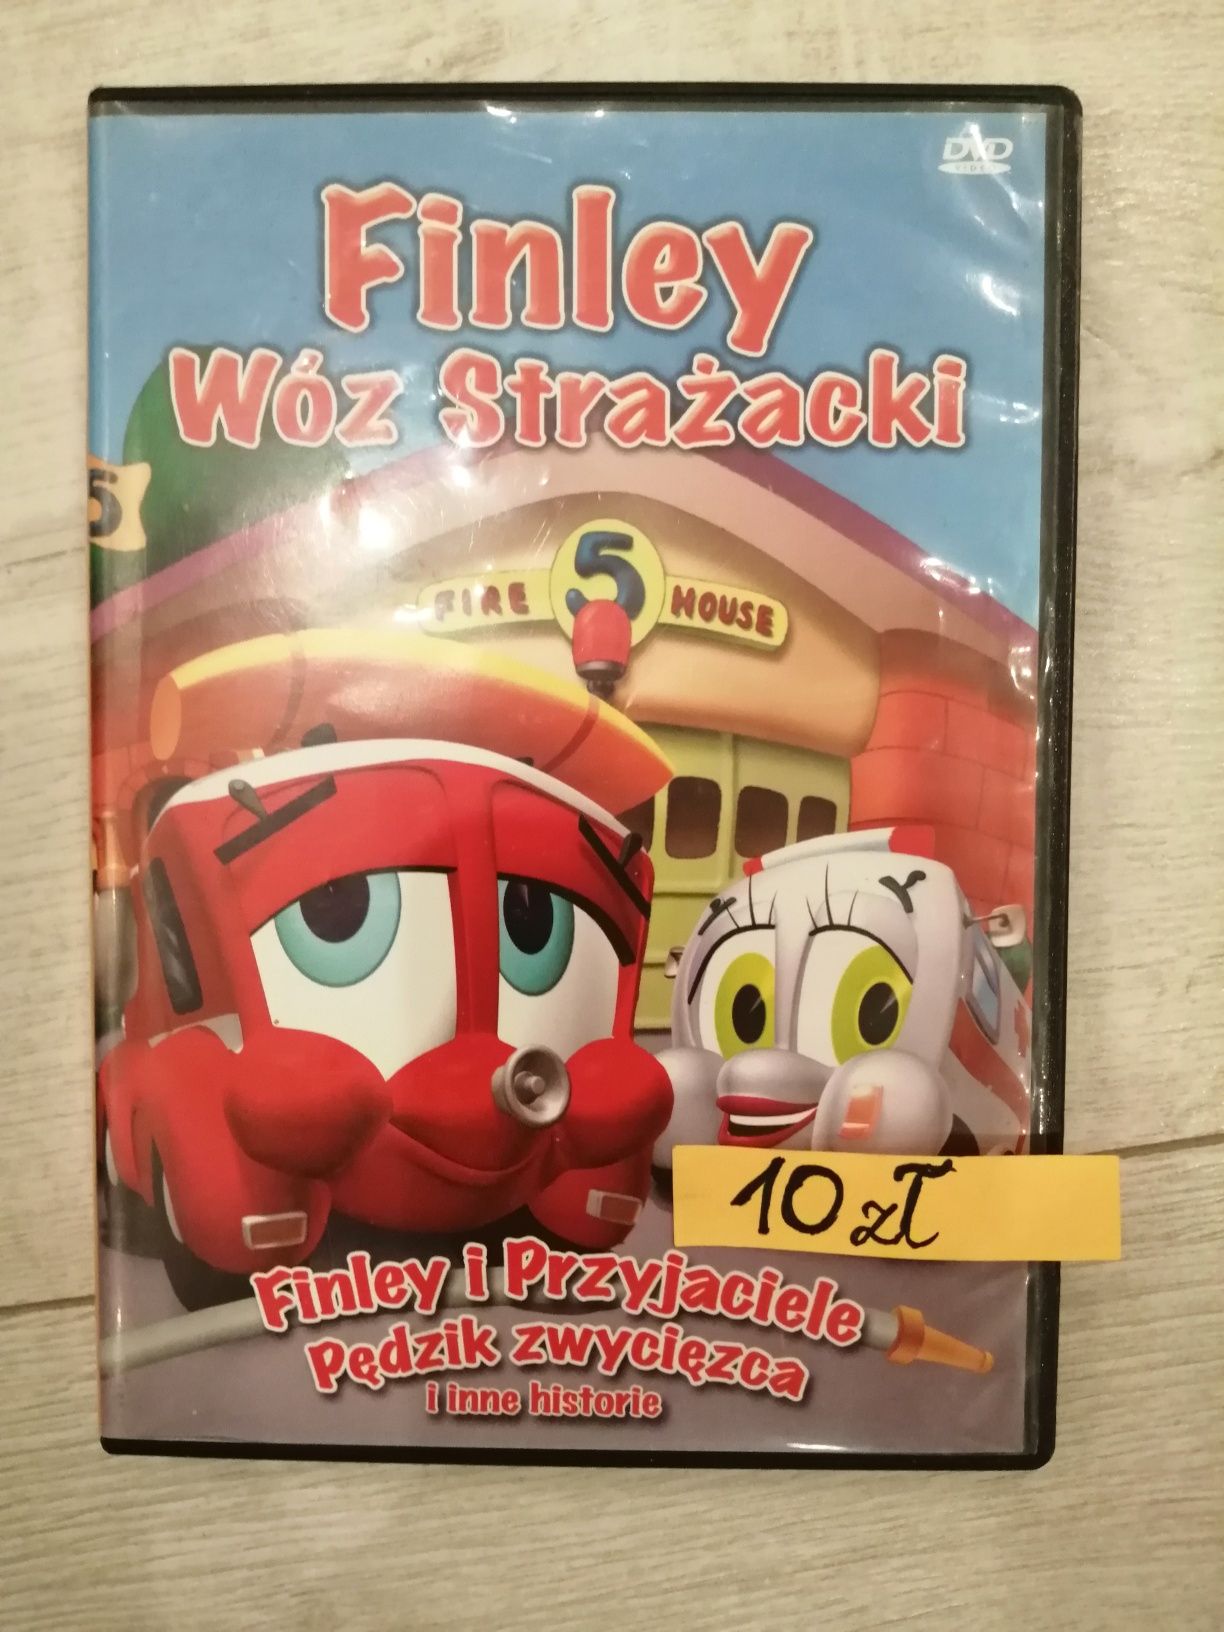 Bajka na DVD Finley wóz strażacki